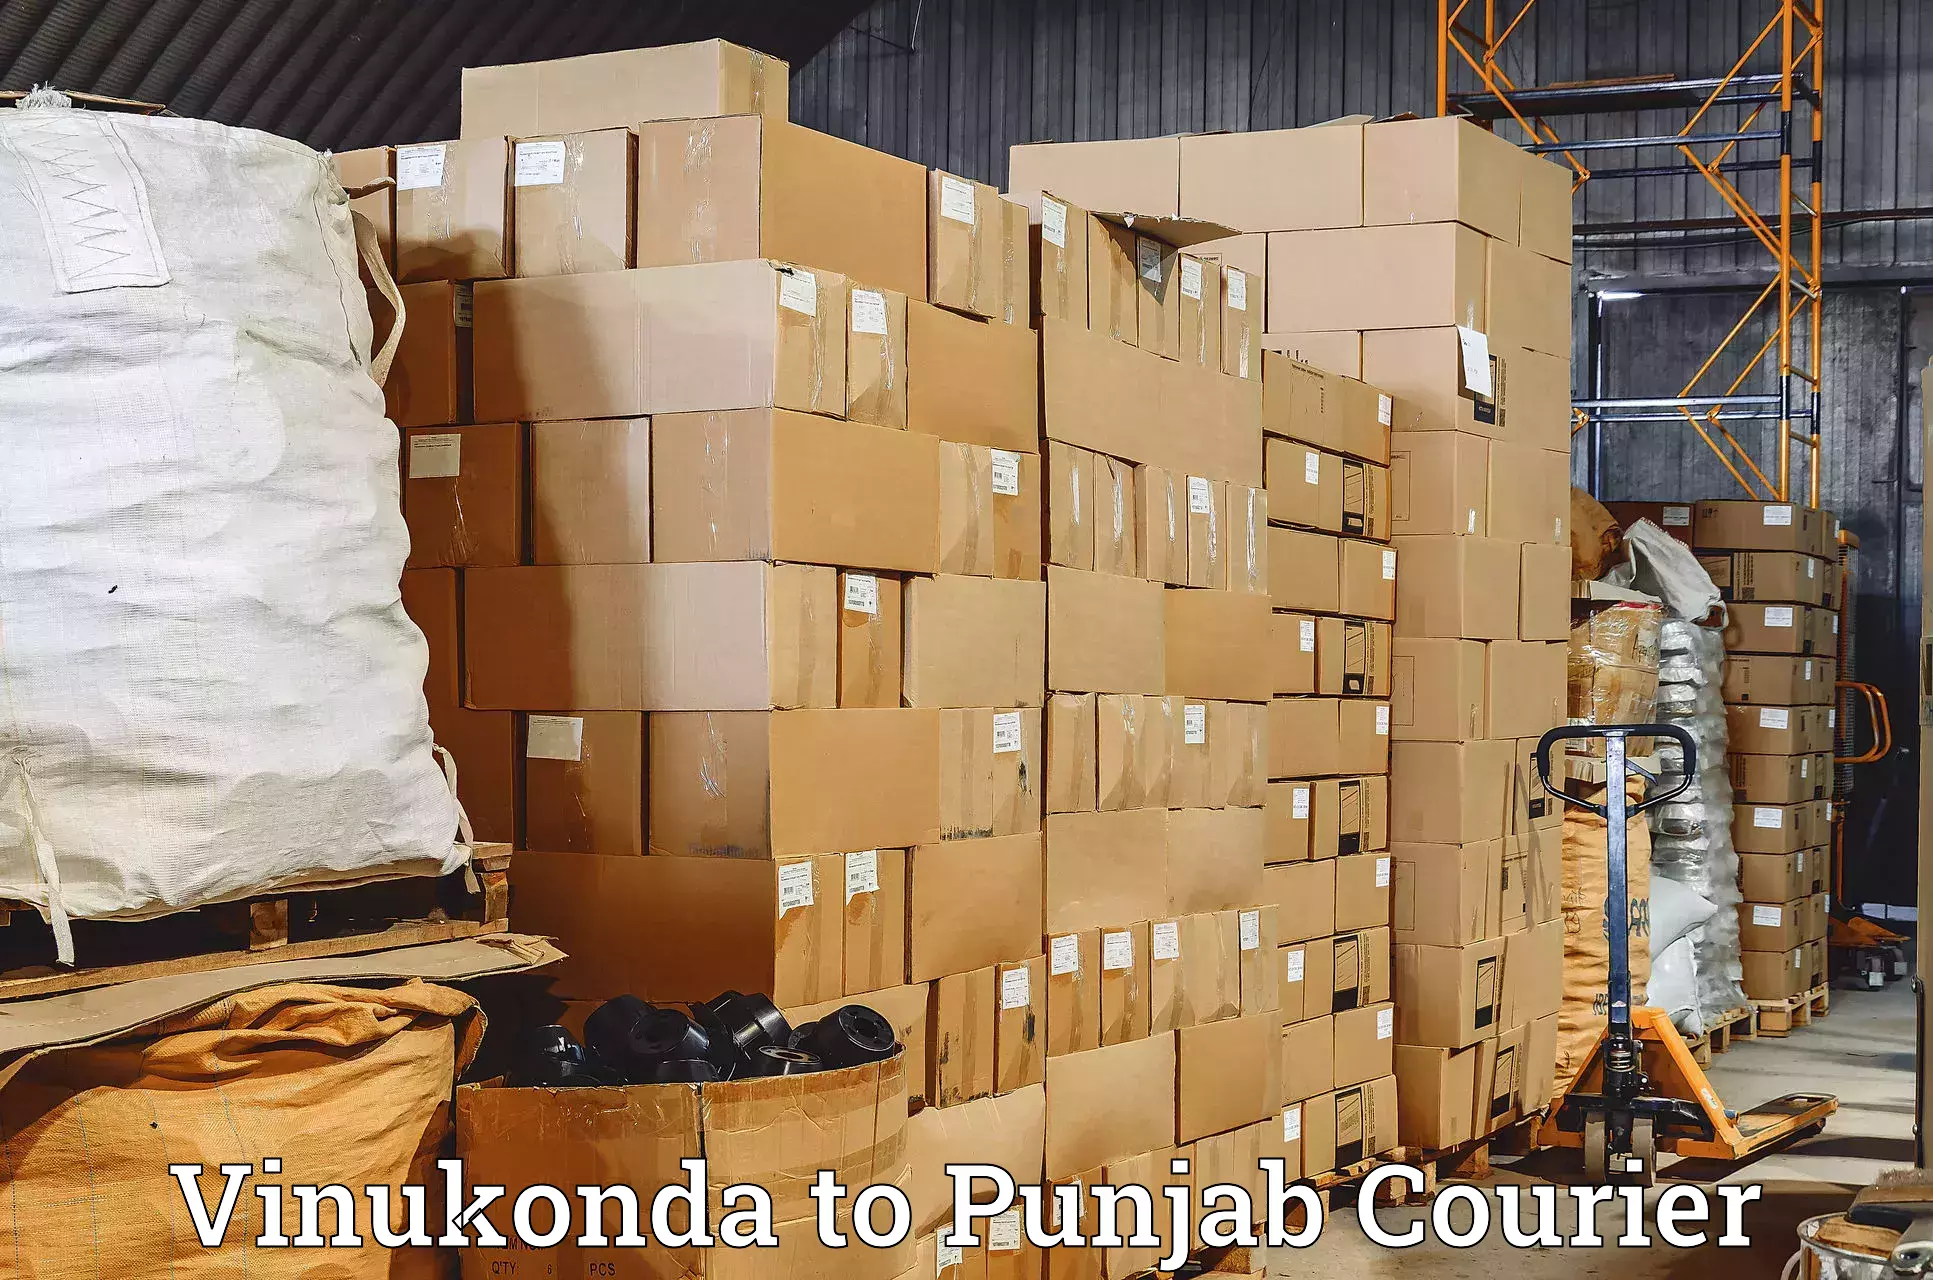 Doorstep delivery service in Vinukonda to Anandpur Sahib